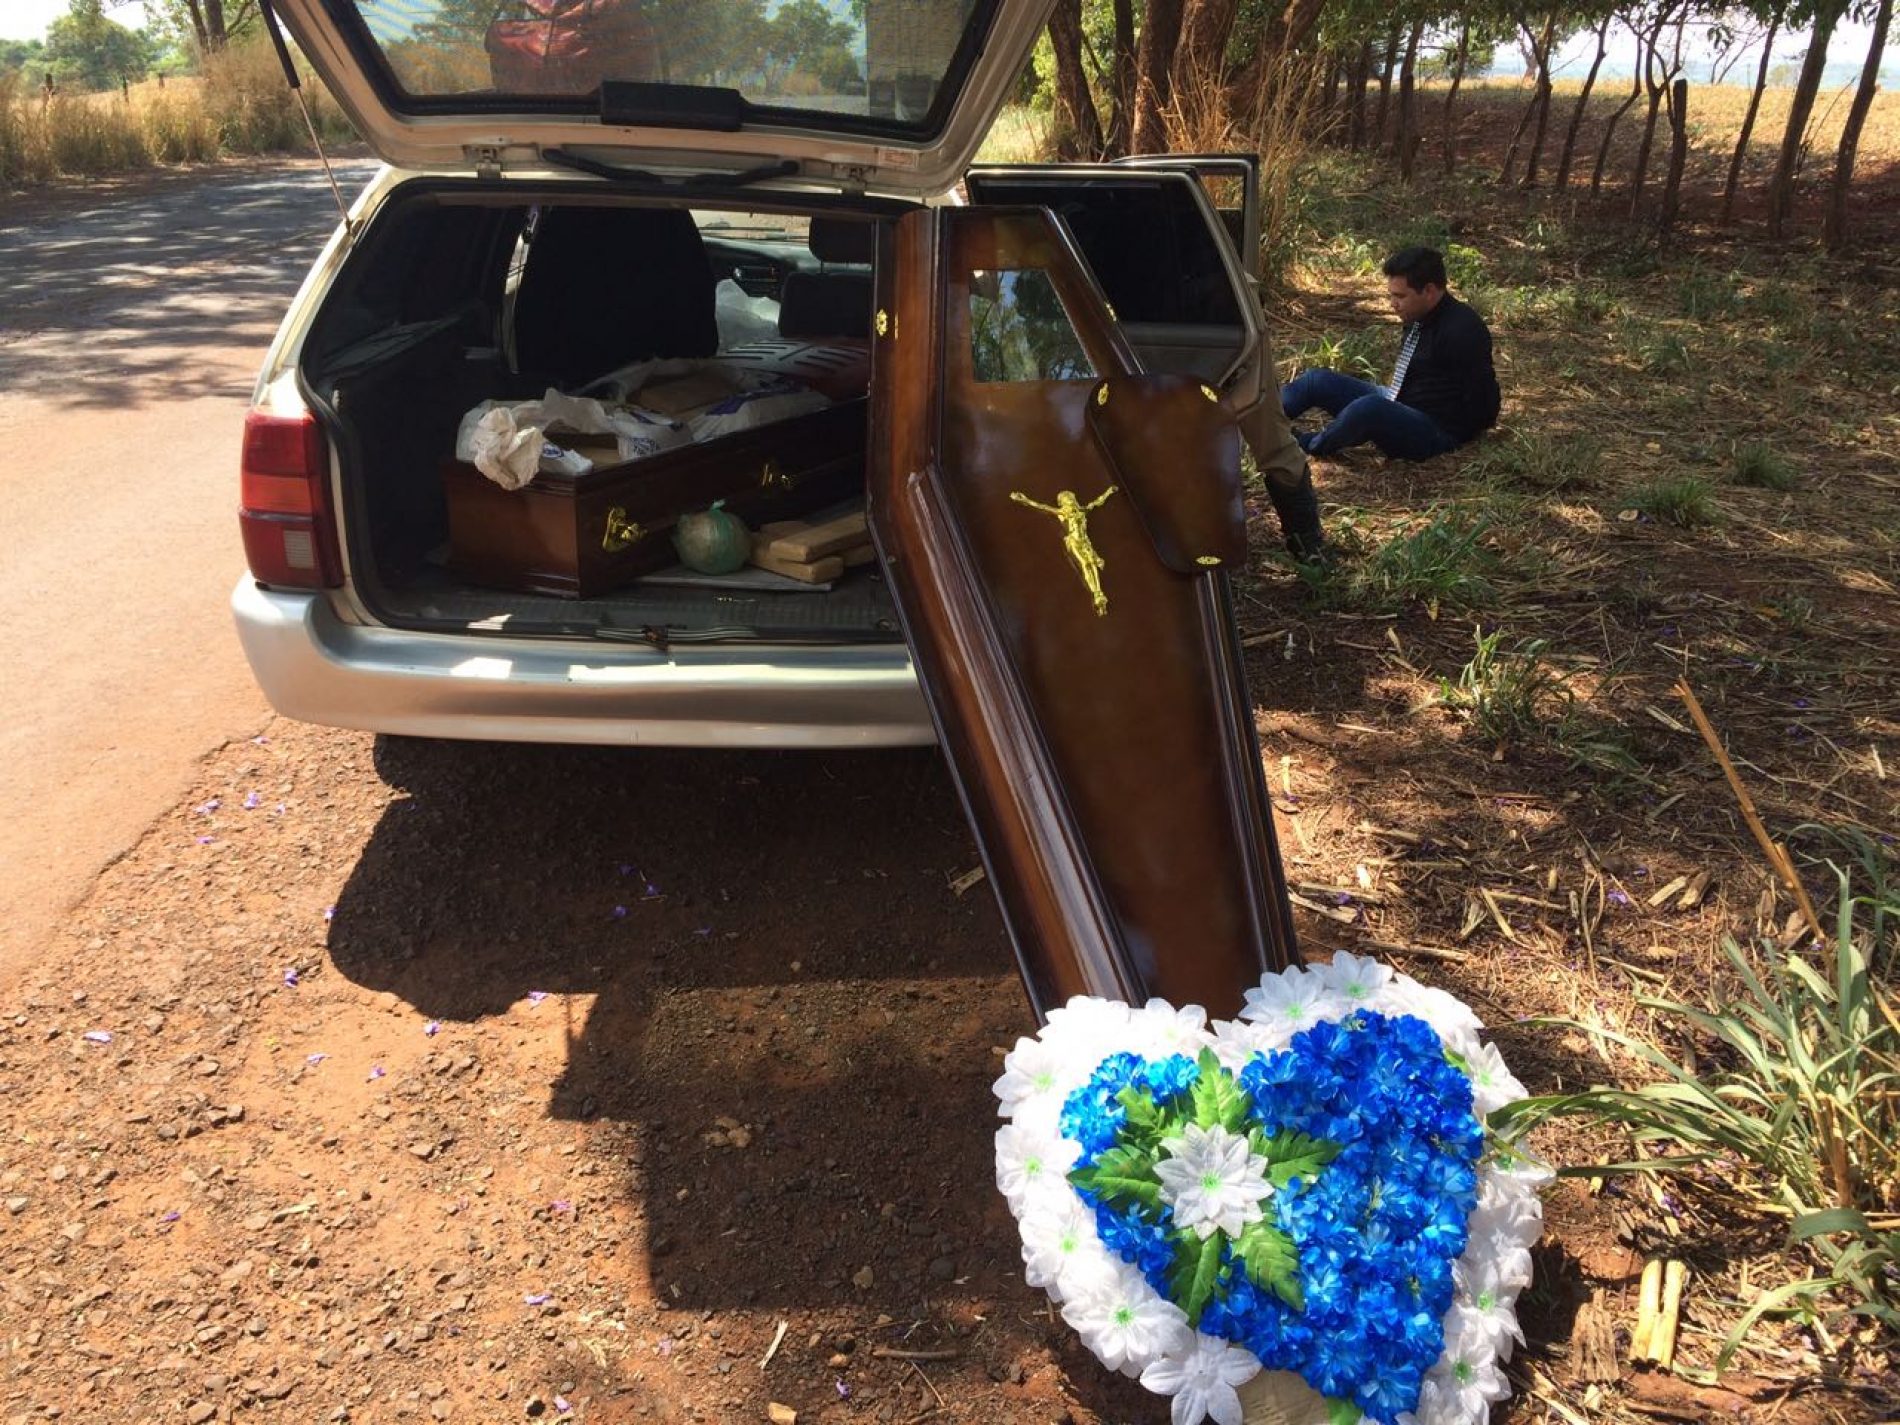 REGIONAL: Falsa viatura funerária é encontrada carregada de drogas